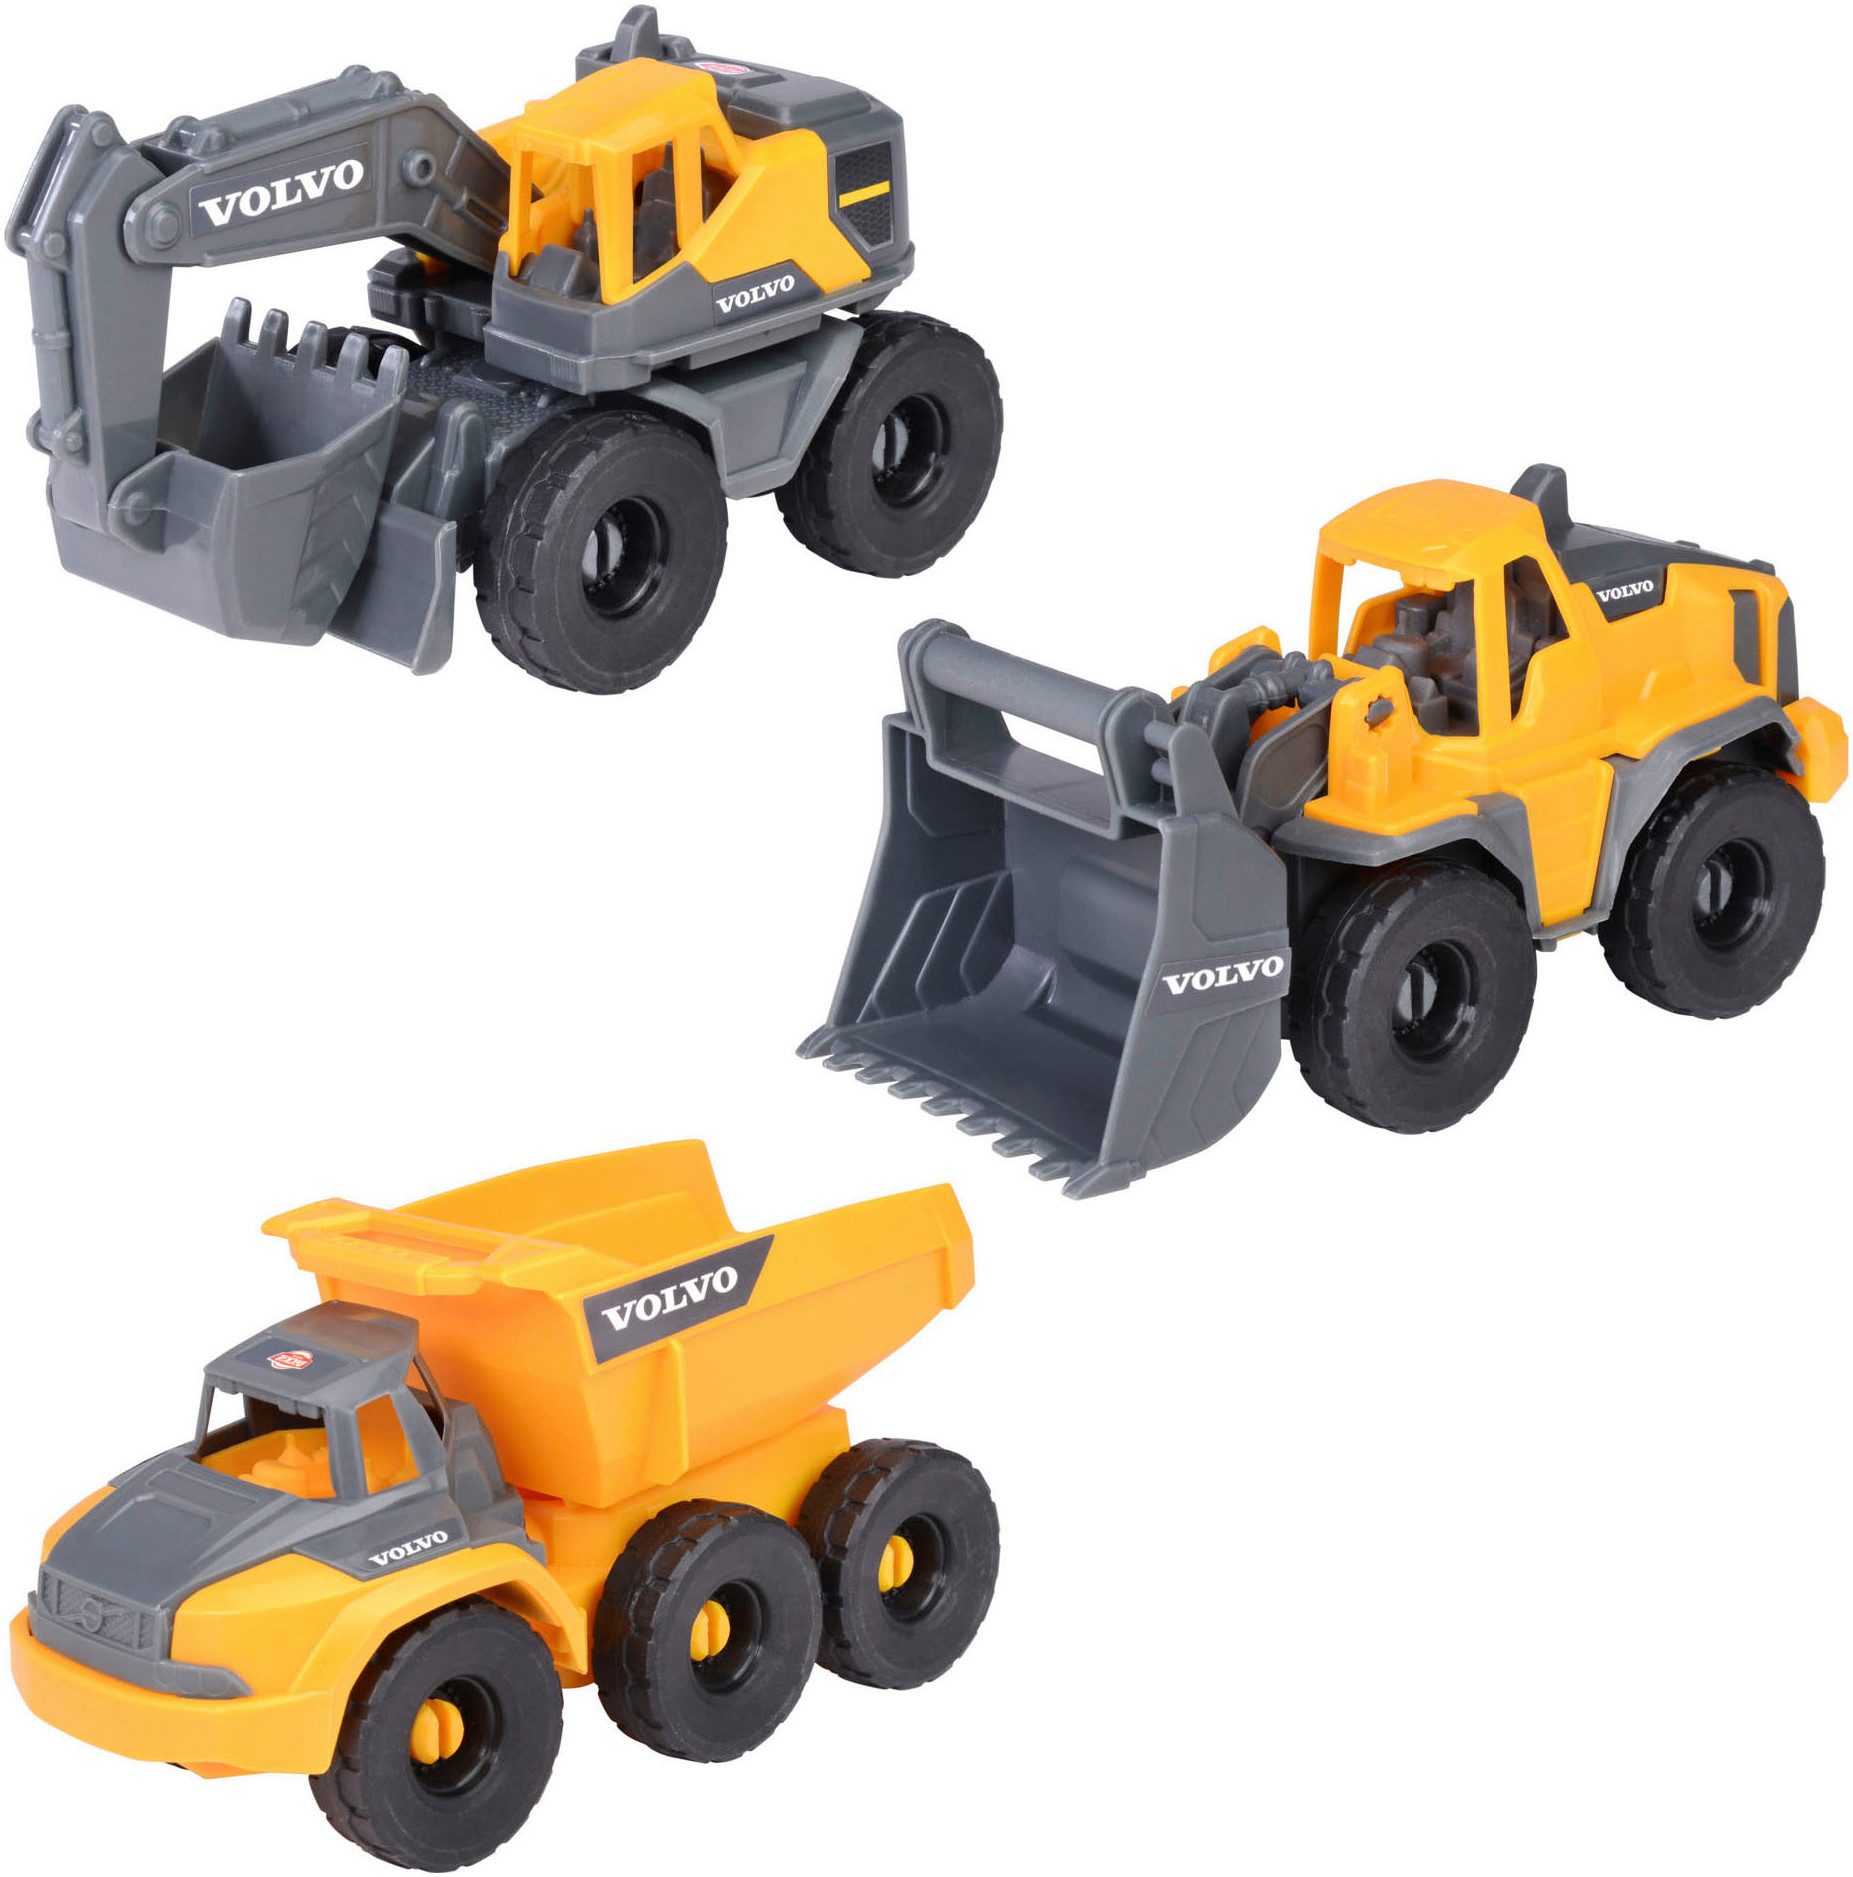 Dickie Toys Spielzeug-Baumaschine Volvo Construction Set, (Set, Bestehend aus Bagger, Radlader, Kipplaster)